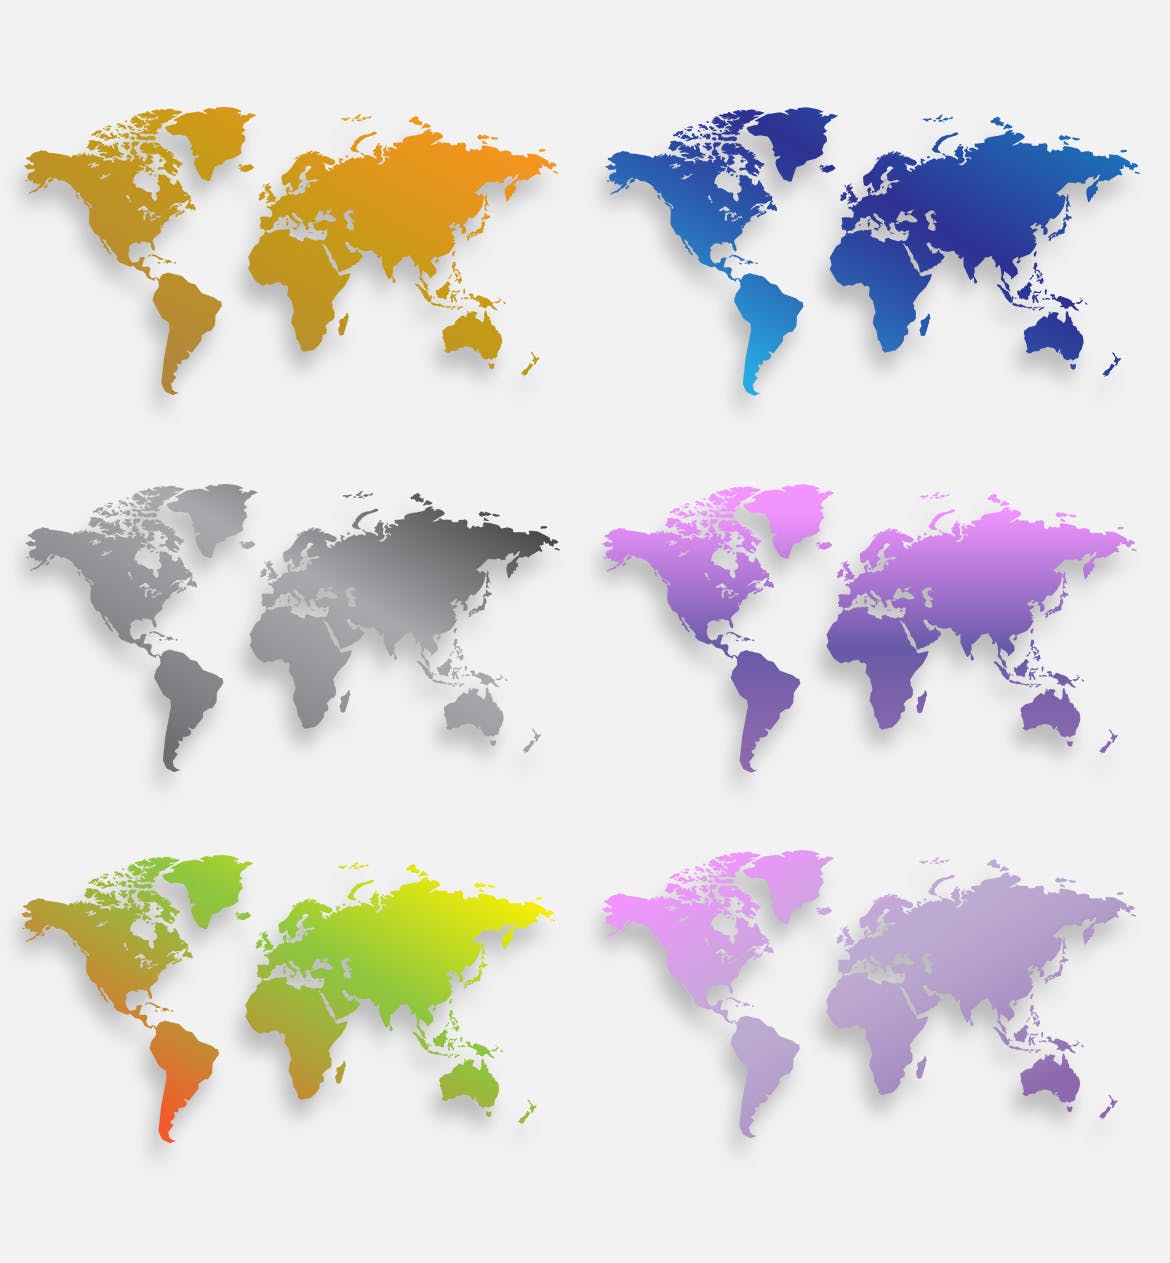 40种设计风格世界地图矢量图形设计素材下载 Map of the world 40 Version插图(7)